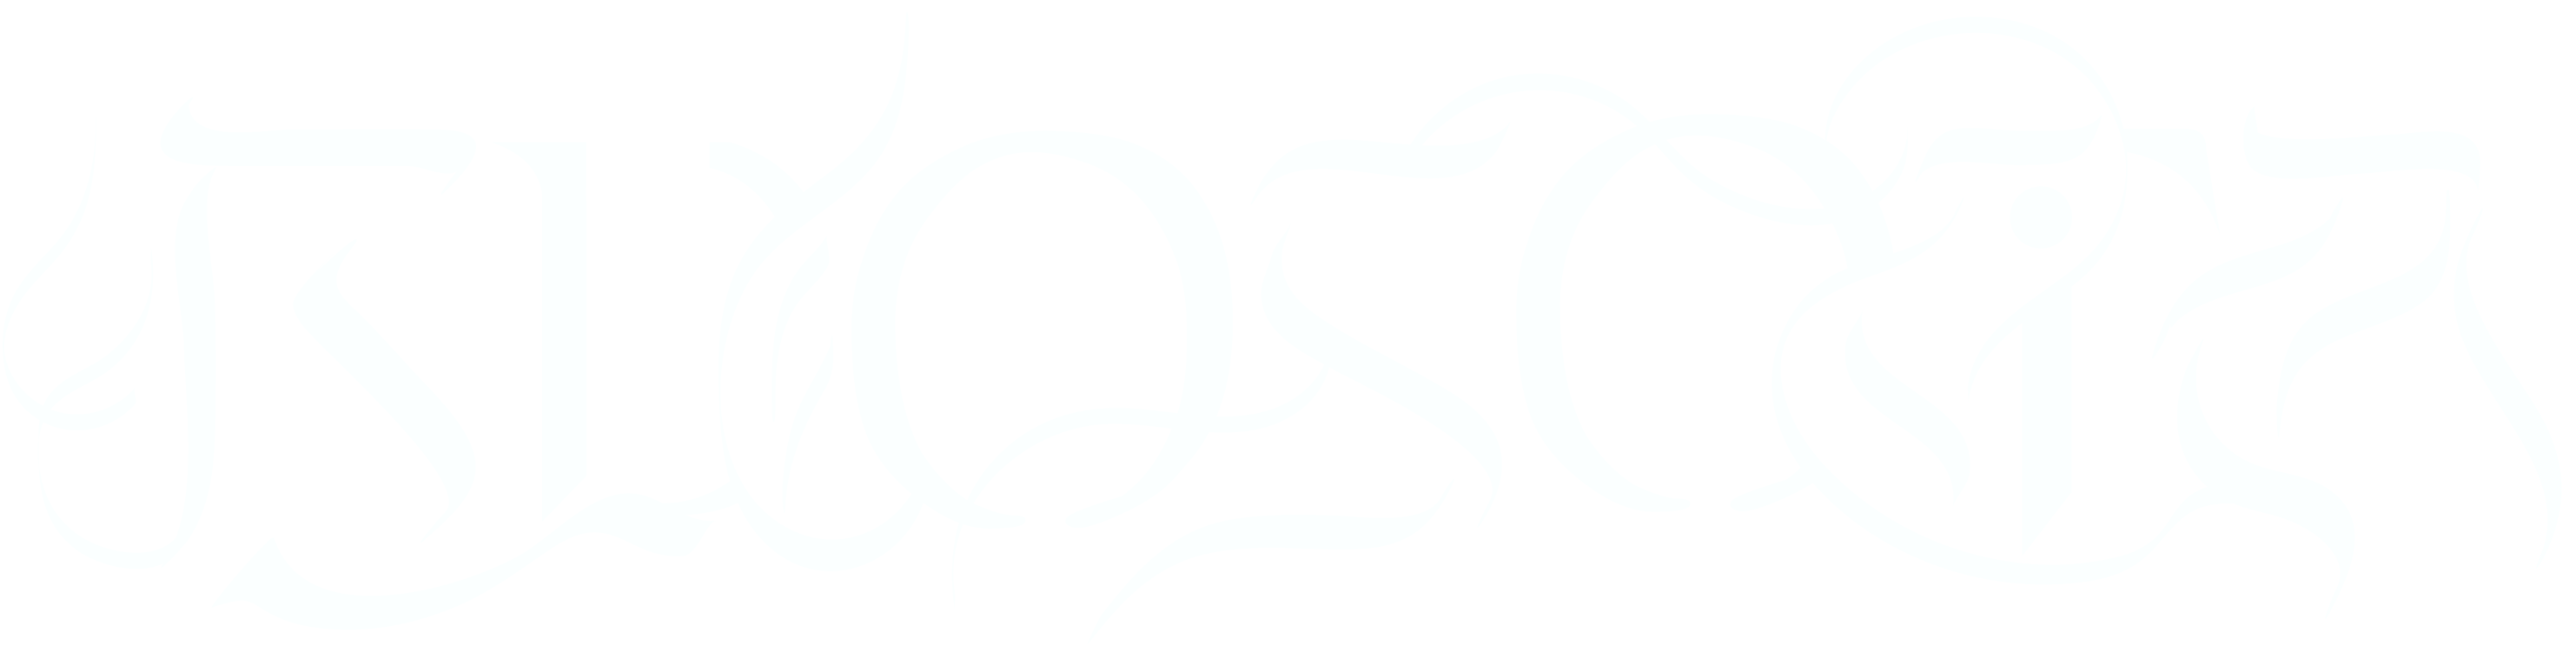 エドソウタのロゴ画像